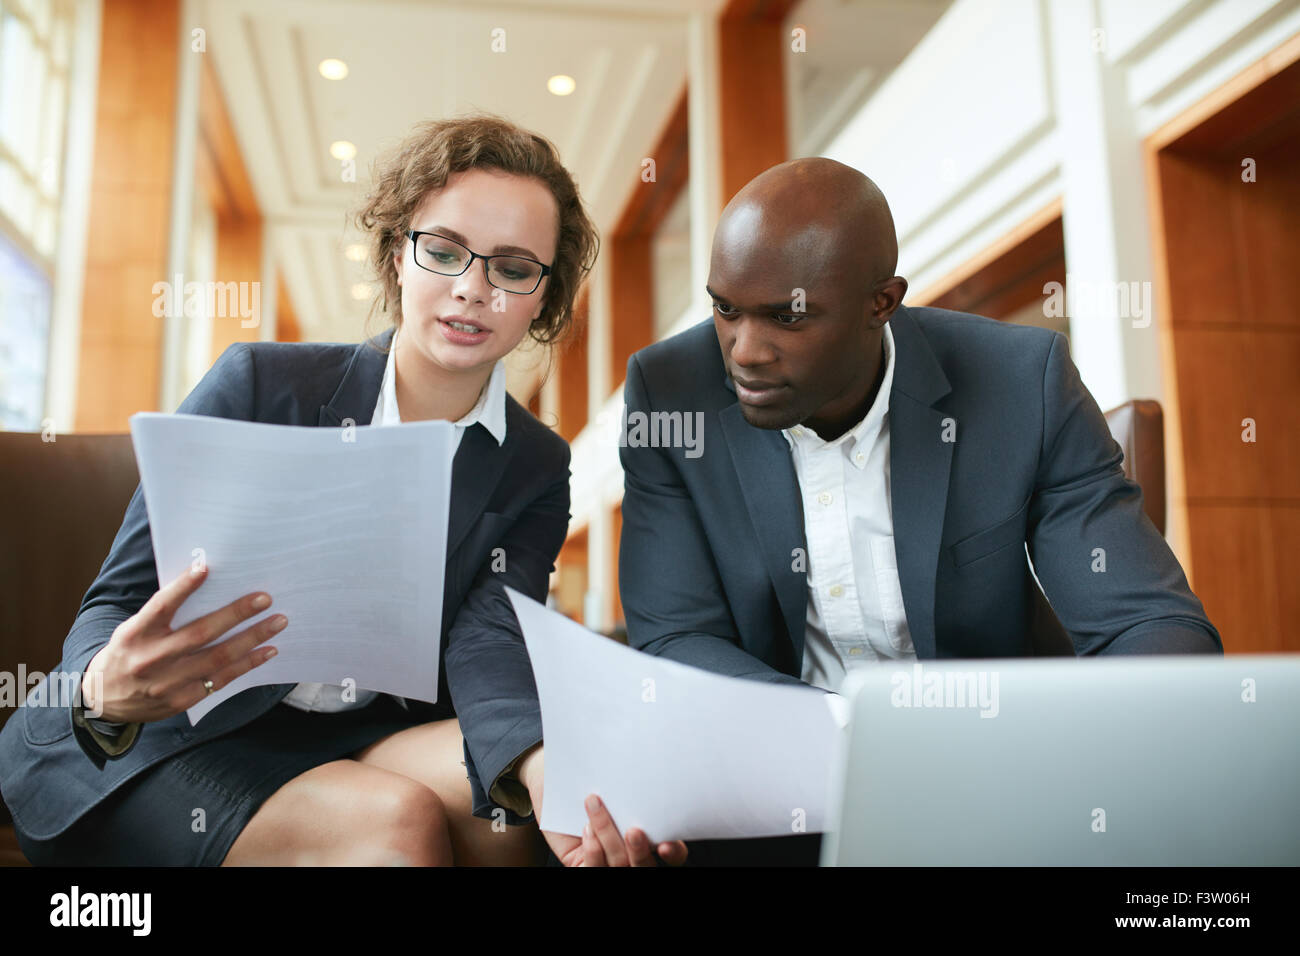 Porträt des jungen Business-Mann und Frau im Café sitzen und diskutieren Vertrag. Diverse Geschäftsleute treffen sich in der Hotel-lobby Stockfoto